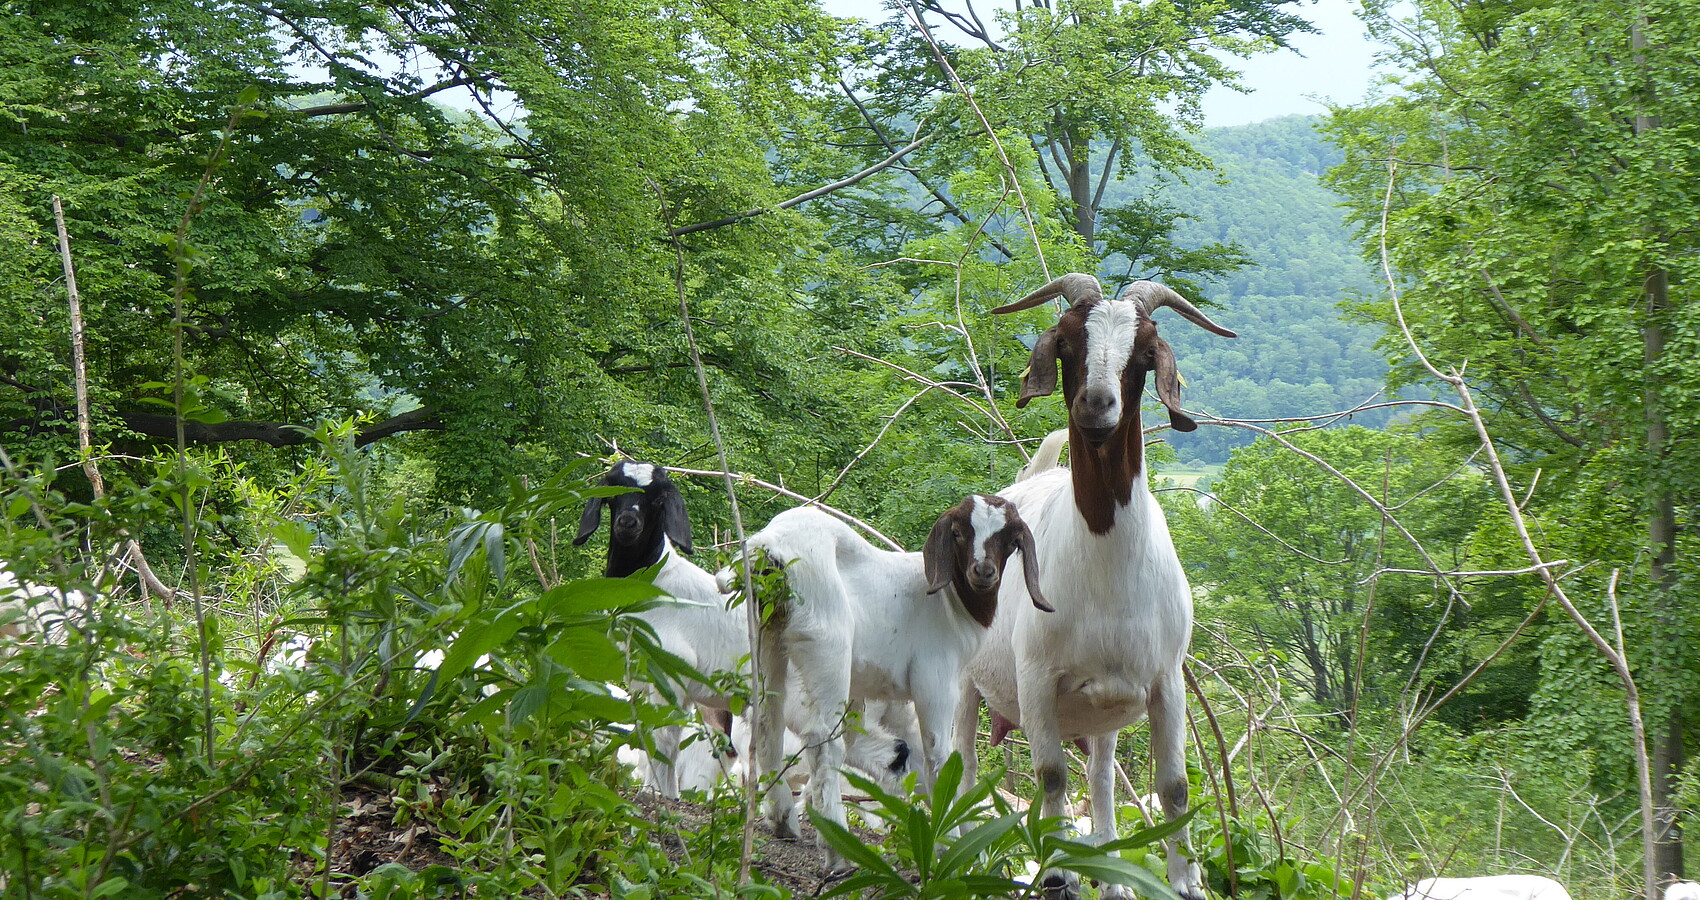 Bild zeigt zwei Ziegen in einem Wald